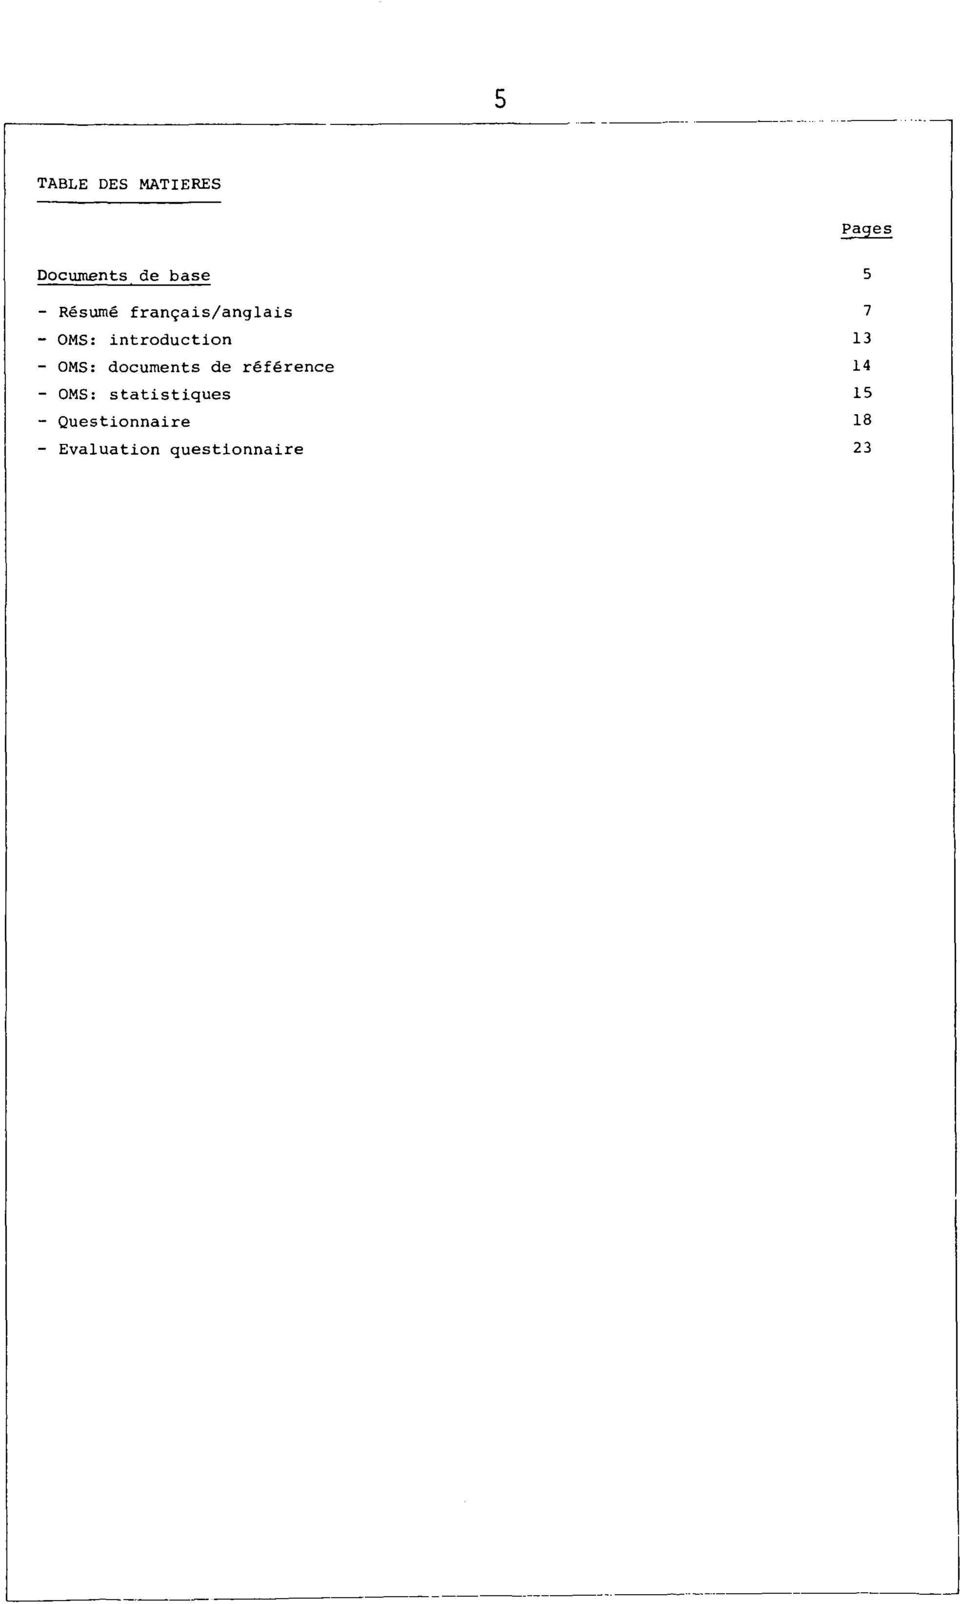 documents de référence 14 - OMS: statistiques 15